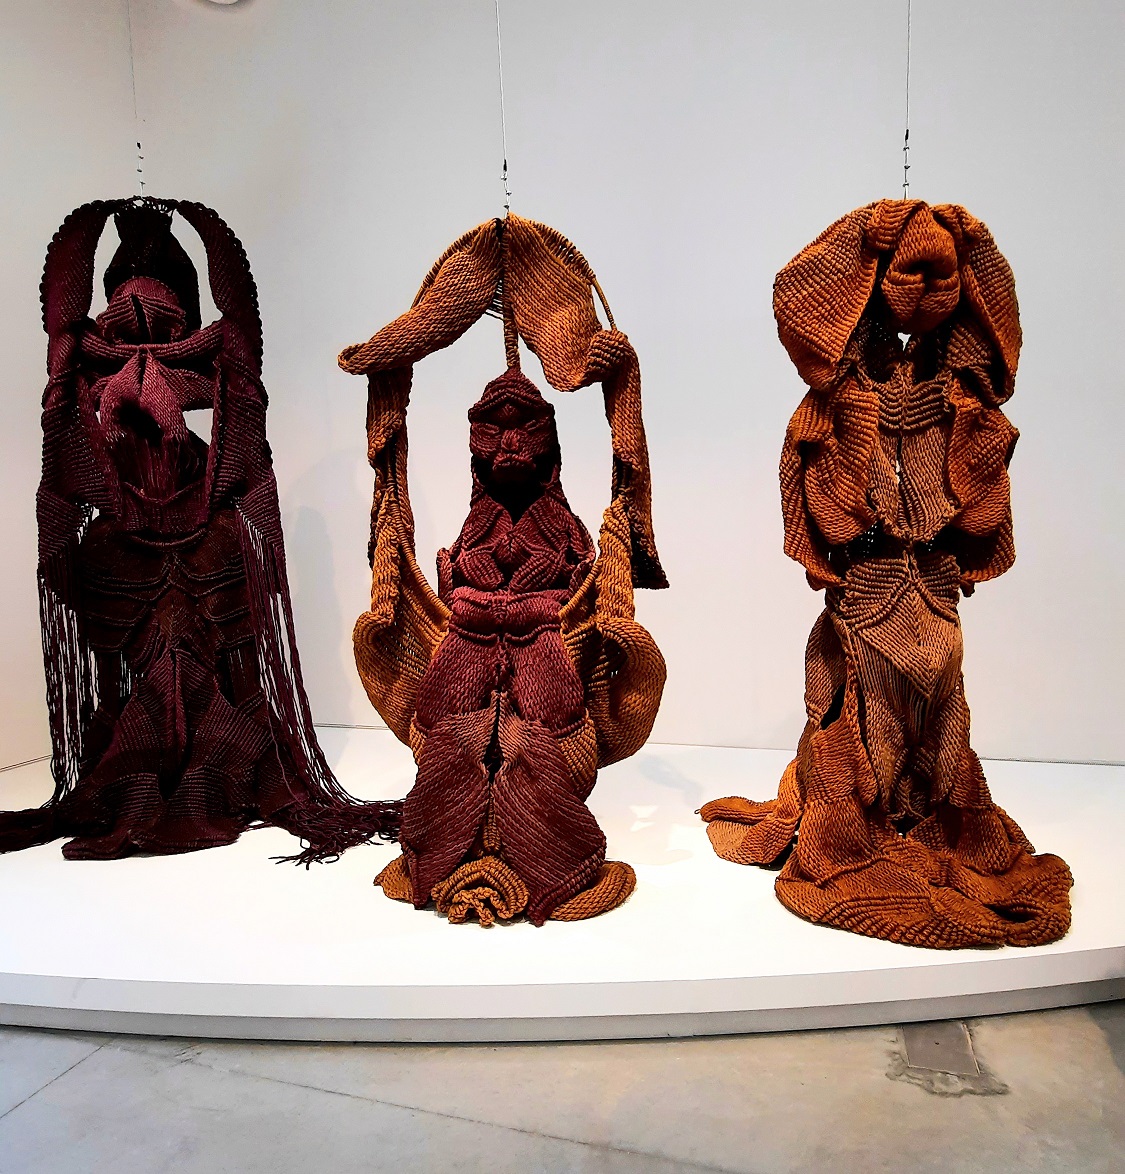 L'immagine mostra alcune delle opere dell'artista indiana Mrinalini Mukherjere attualmente esposte alla Biennale di Venezia 22. Si tratta di un gruppo di 3 statue fatte di tessuto grezzo dai toni rosso ocra vagamente simili a statue induiste, su uno sfondo bianco asettico